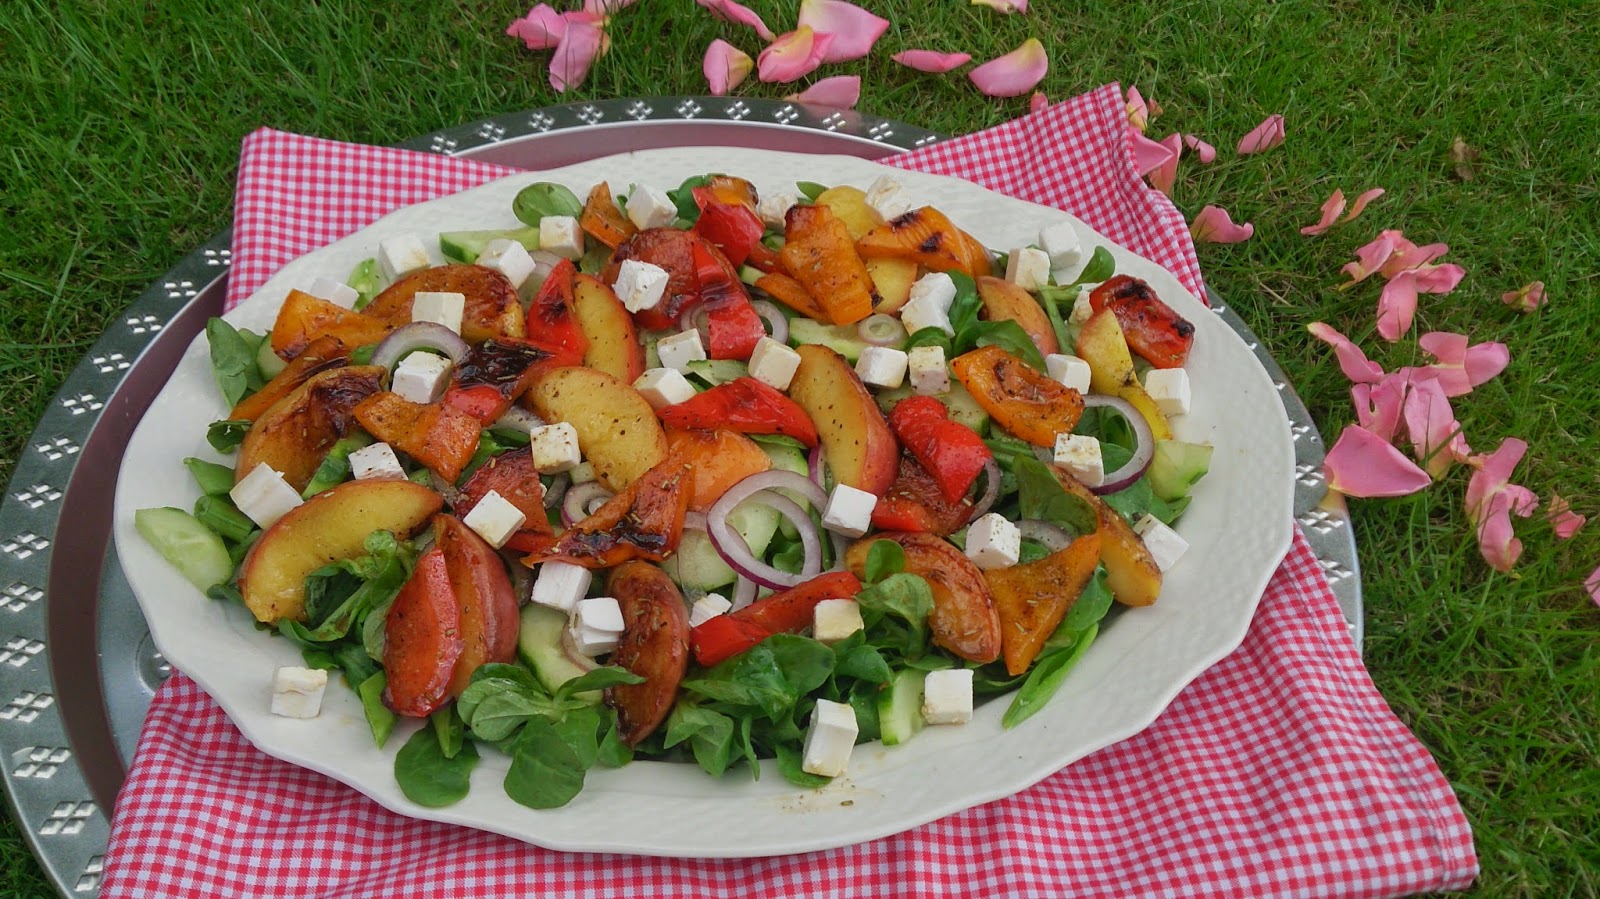 Saras madunivers: Grillet laks og salat grillede peberfrugt og feta med stegte kartofler.